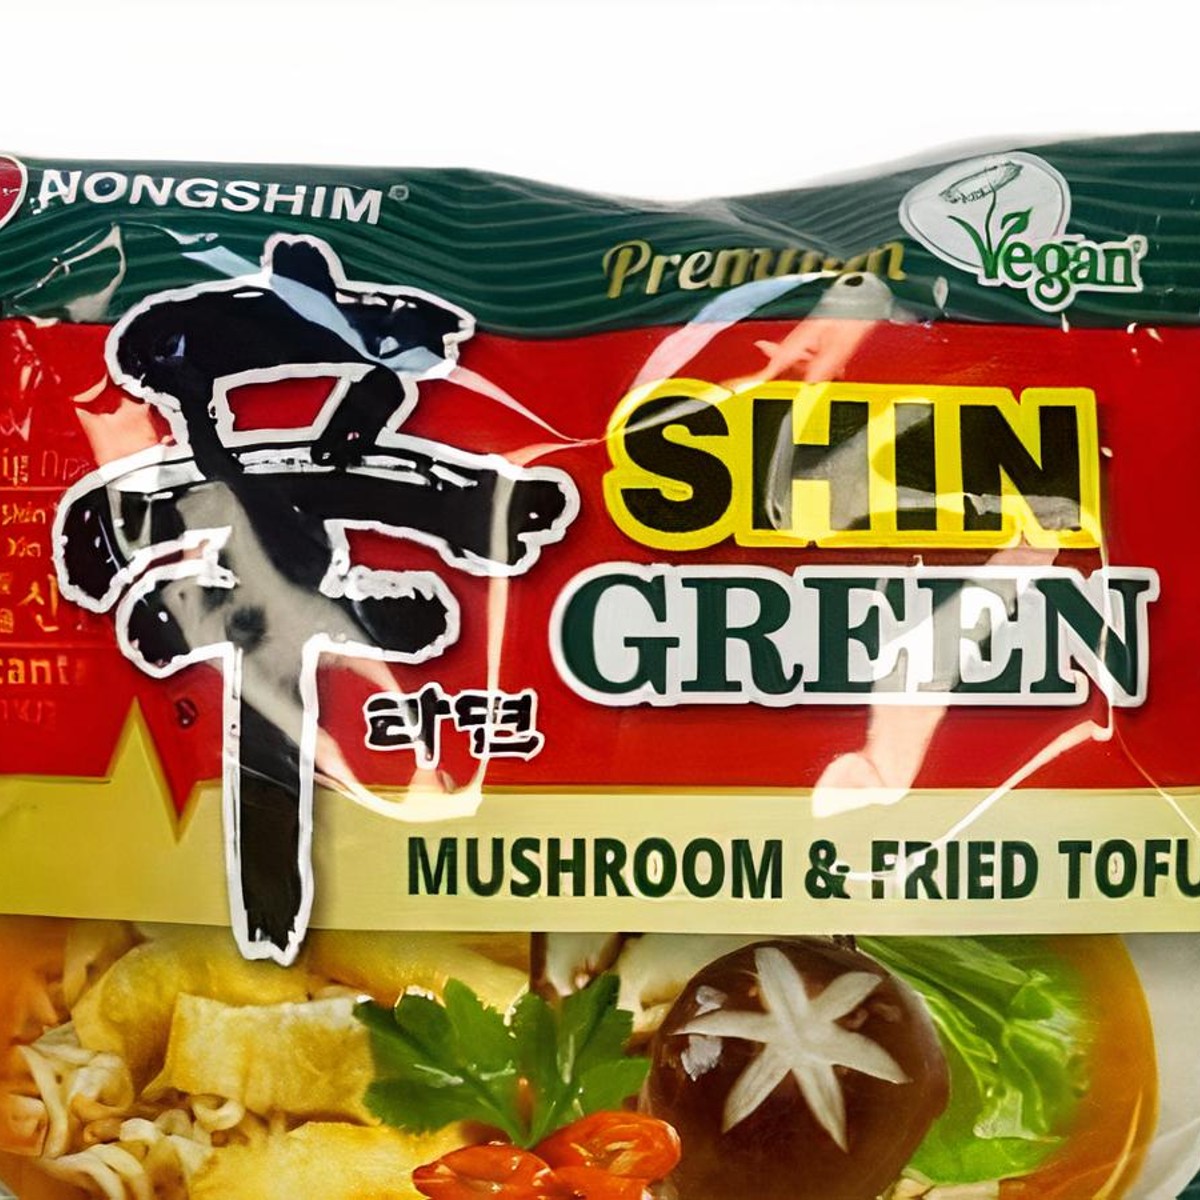 Nongshim Shin Ramyun Multi Pack (Mushroom & Fried Tofu) 4.4oz(125g